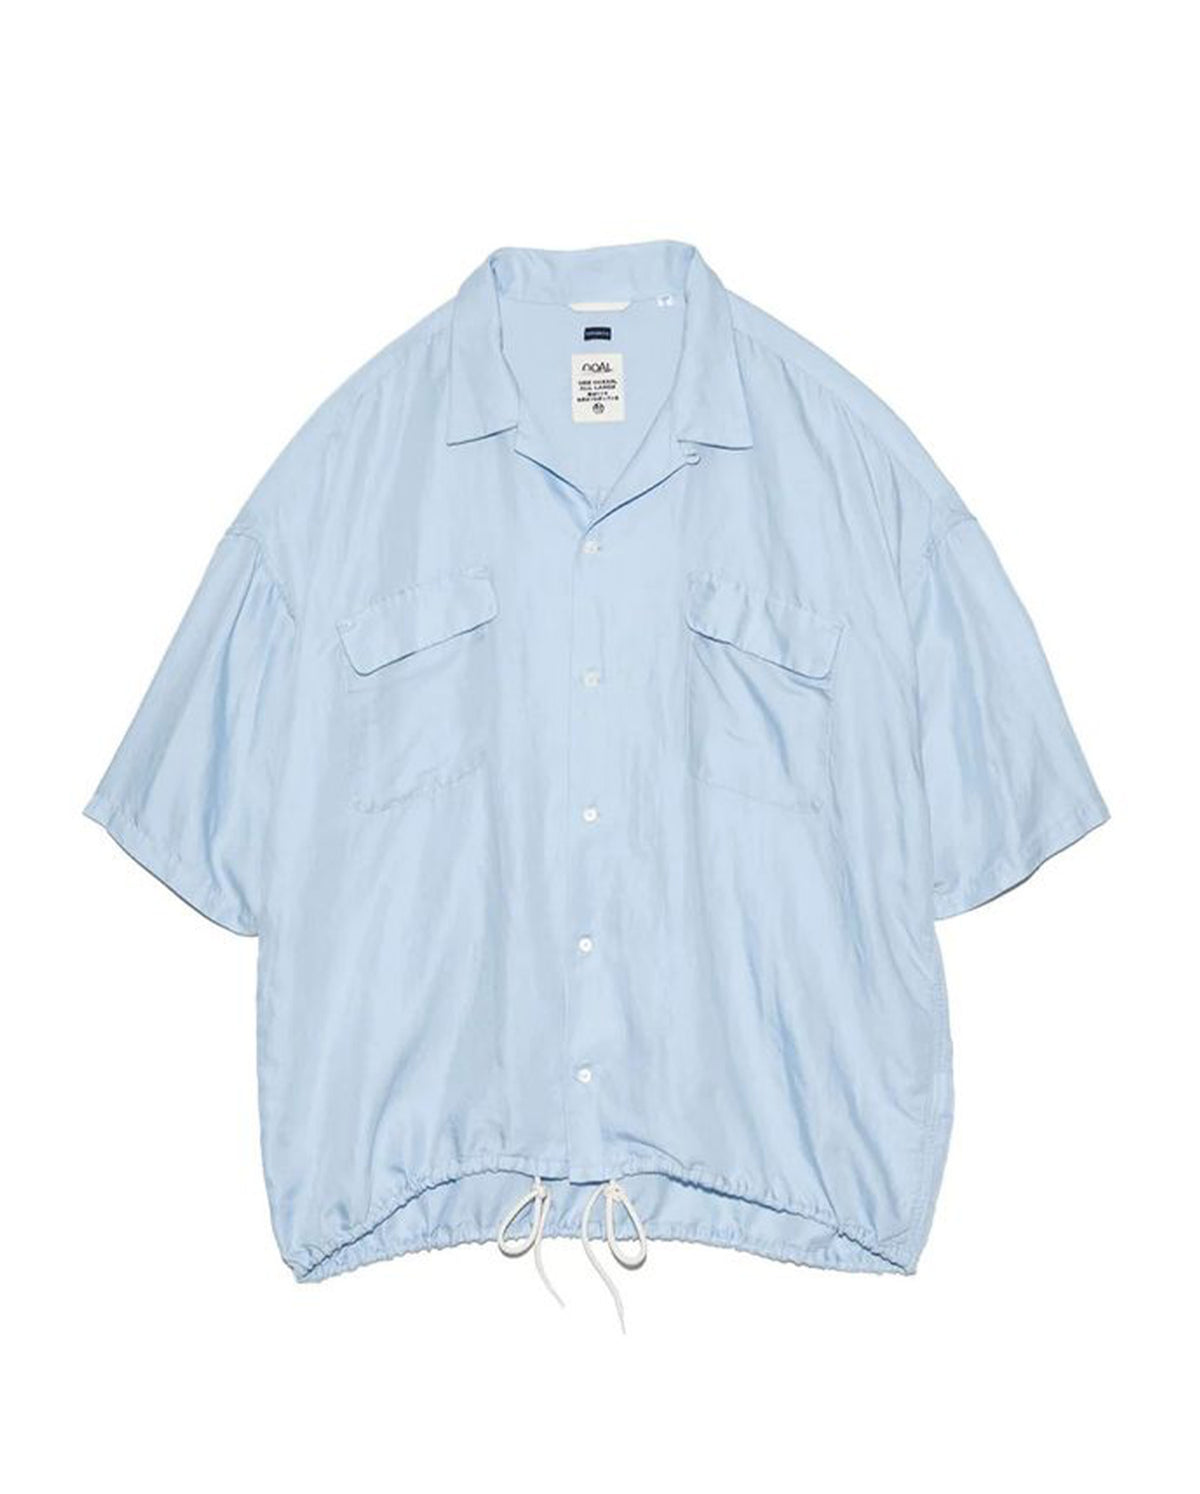 Open Collar Cupra Short Sleeve Shirt